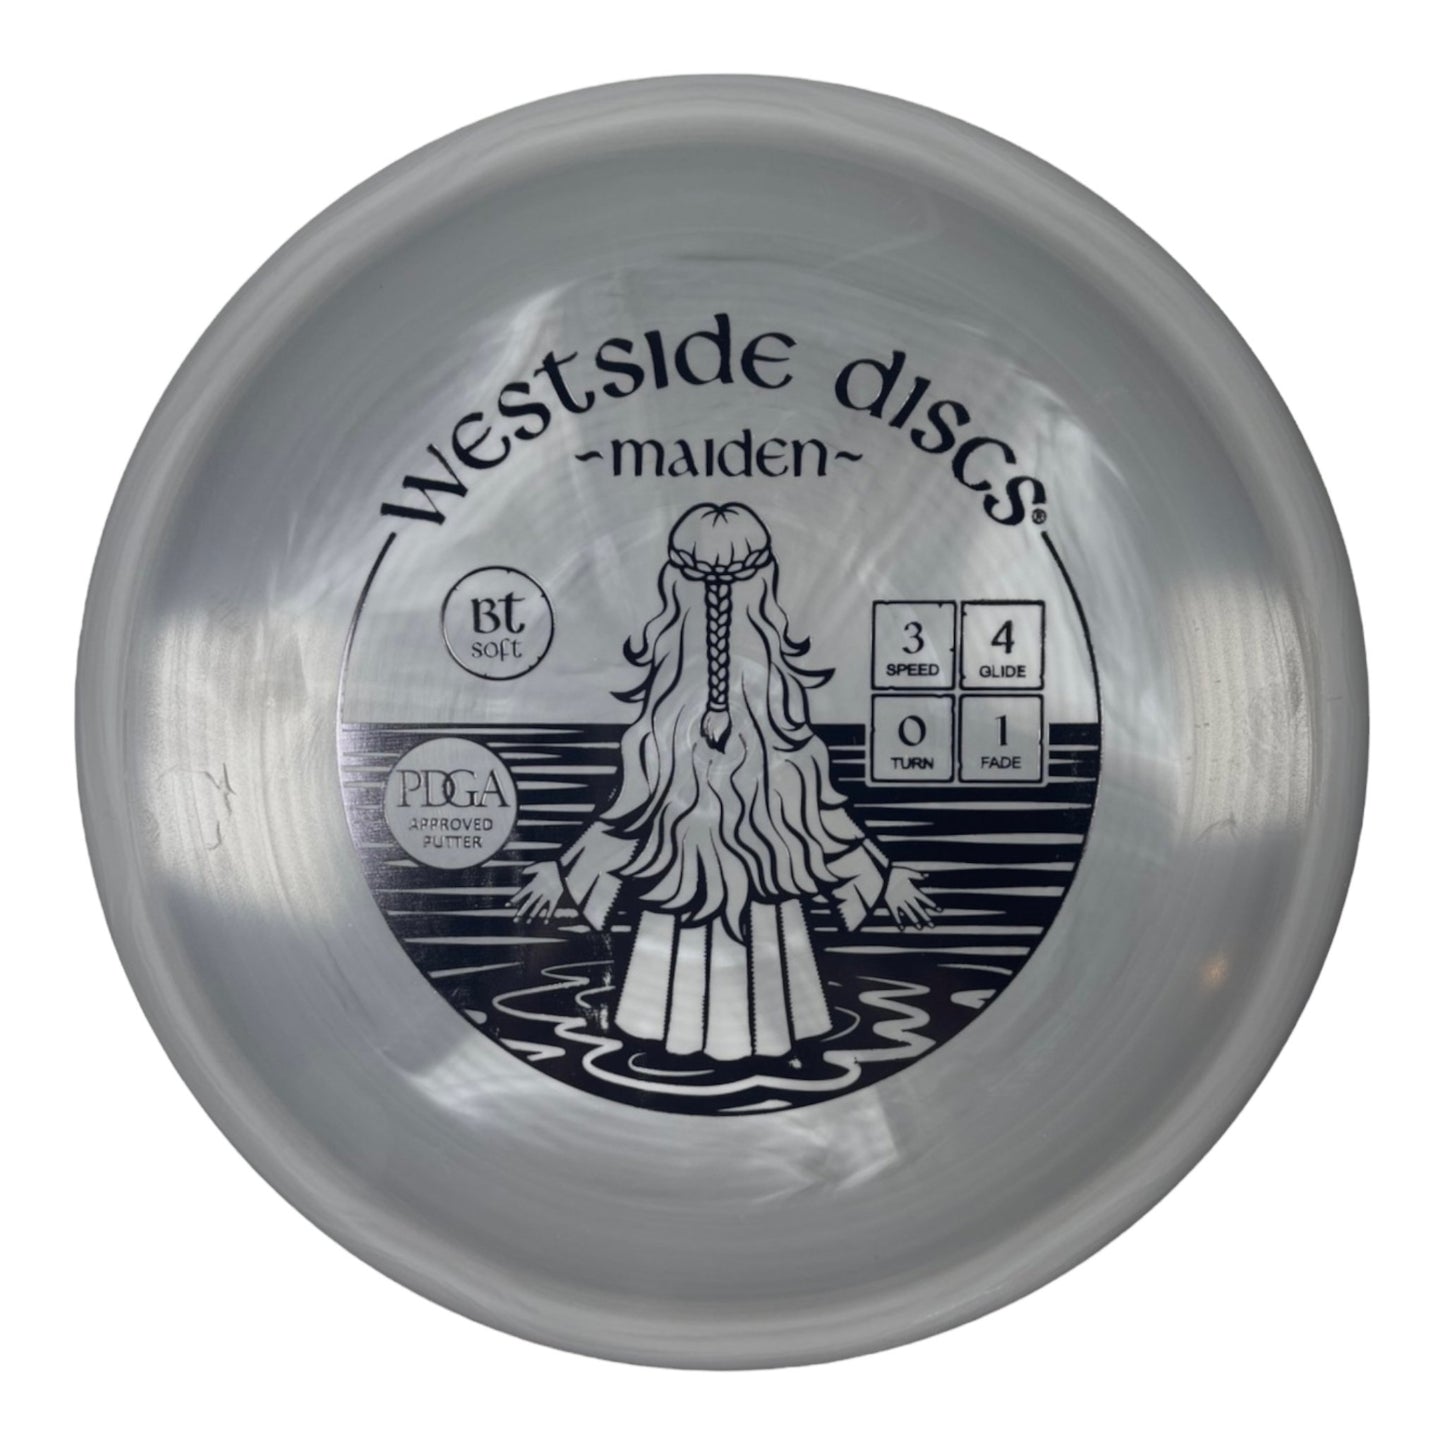 Westside Discs Maiden | BT Soft | Grey/Black Disc Golf